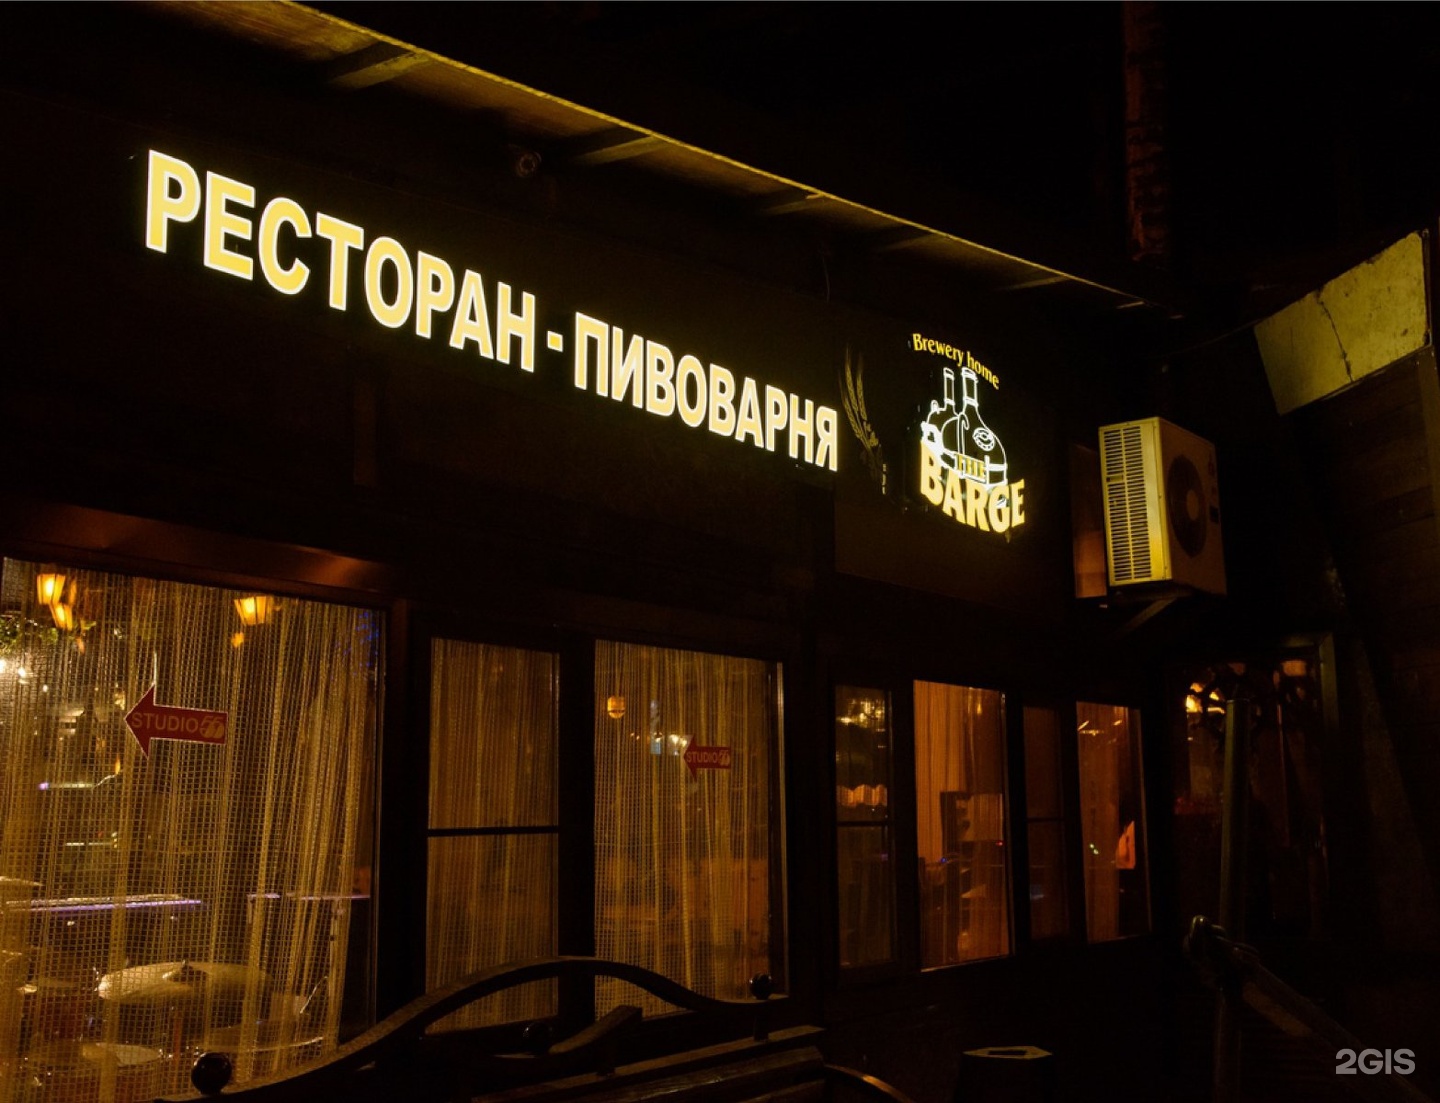 Пивоварня кемерово. Ресторан баржа Кемерово. Пивоварня баржа. Кафе баржа Димитровград.